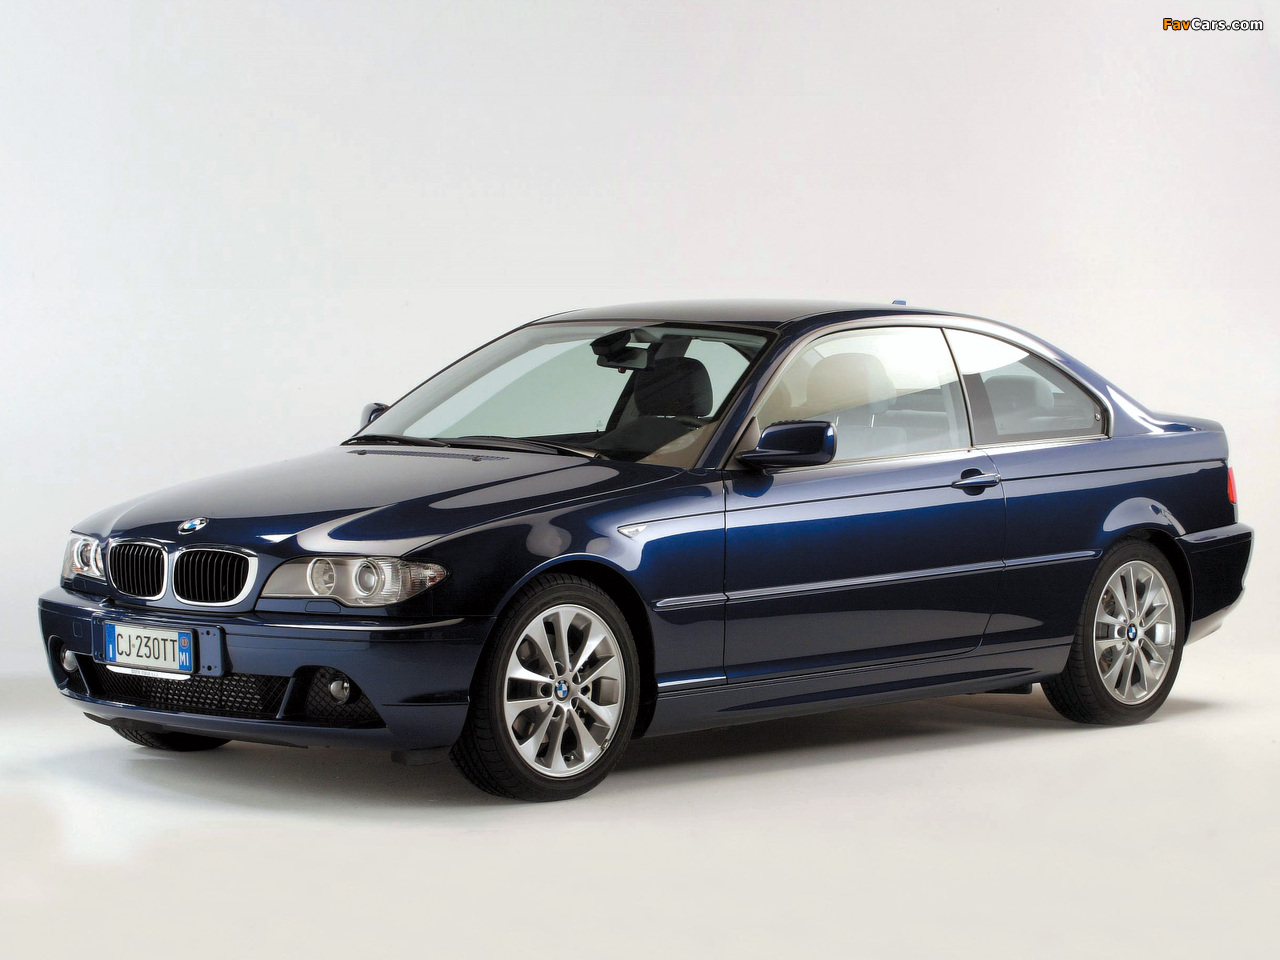 BMW 320Cd Coupe (E46) 2003–06 photos (1280 x 960)